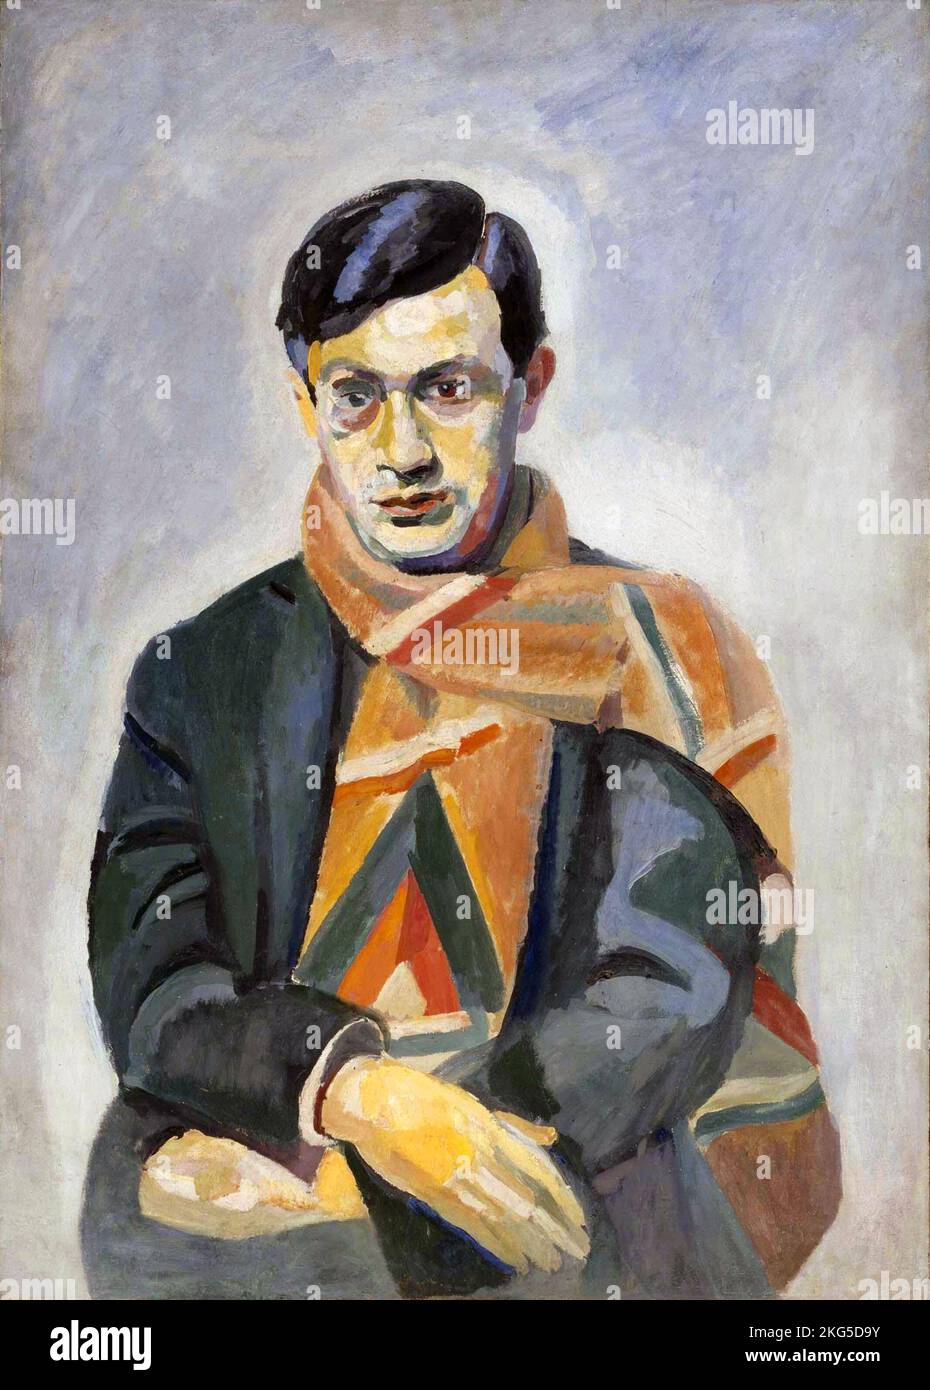 Tristan Tzara (1896 - 1963) Rumänischer und französischer avantgardistischer Dichter, Essayist und Darsteller. Gemälde von Tzara, 1923, von Robert Delaunay Stockfoto